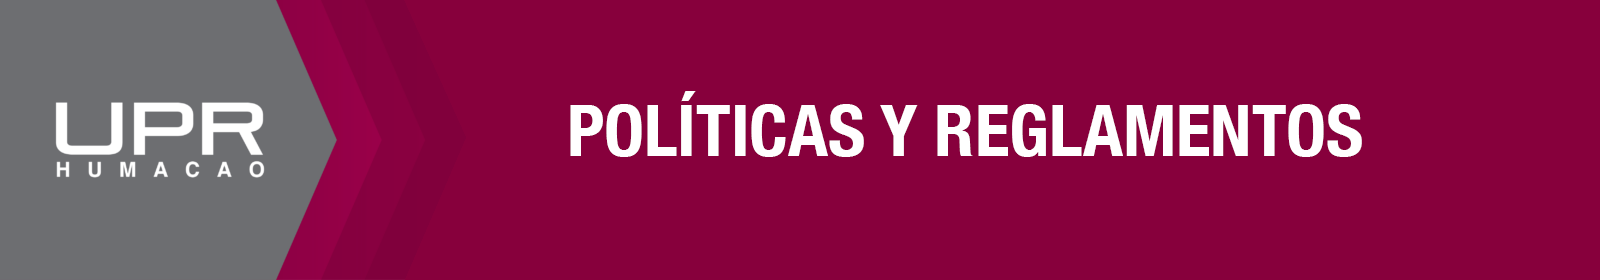 Banner Politicas UPRH